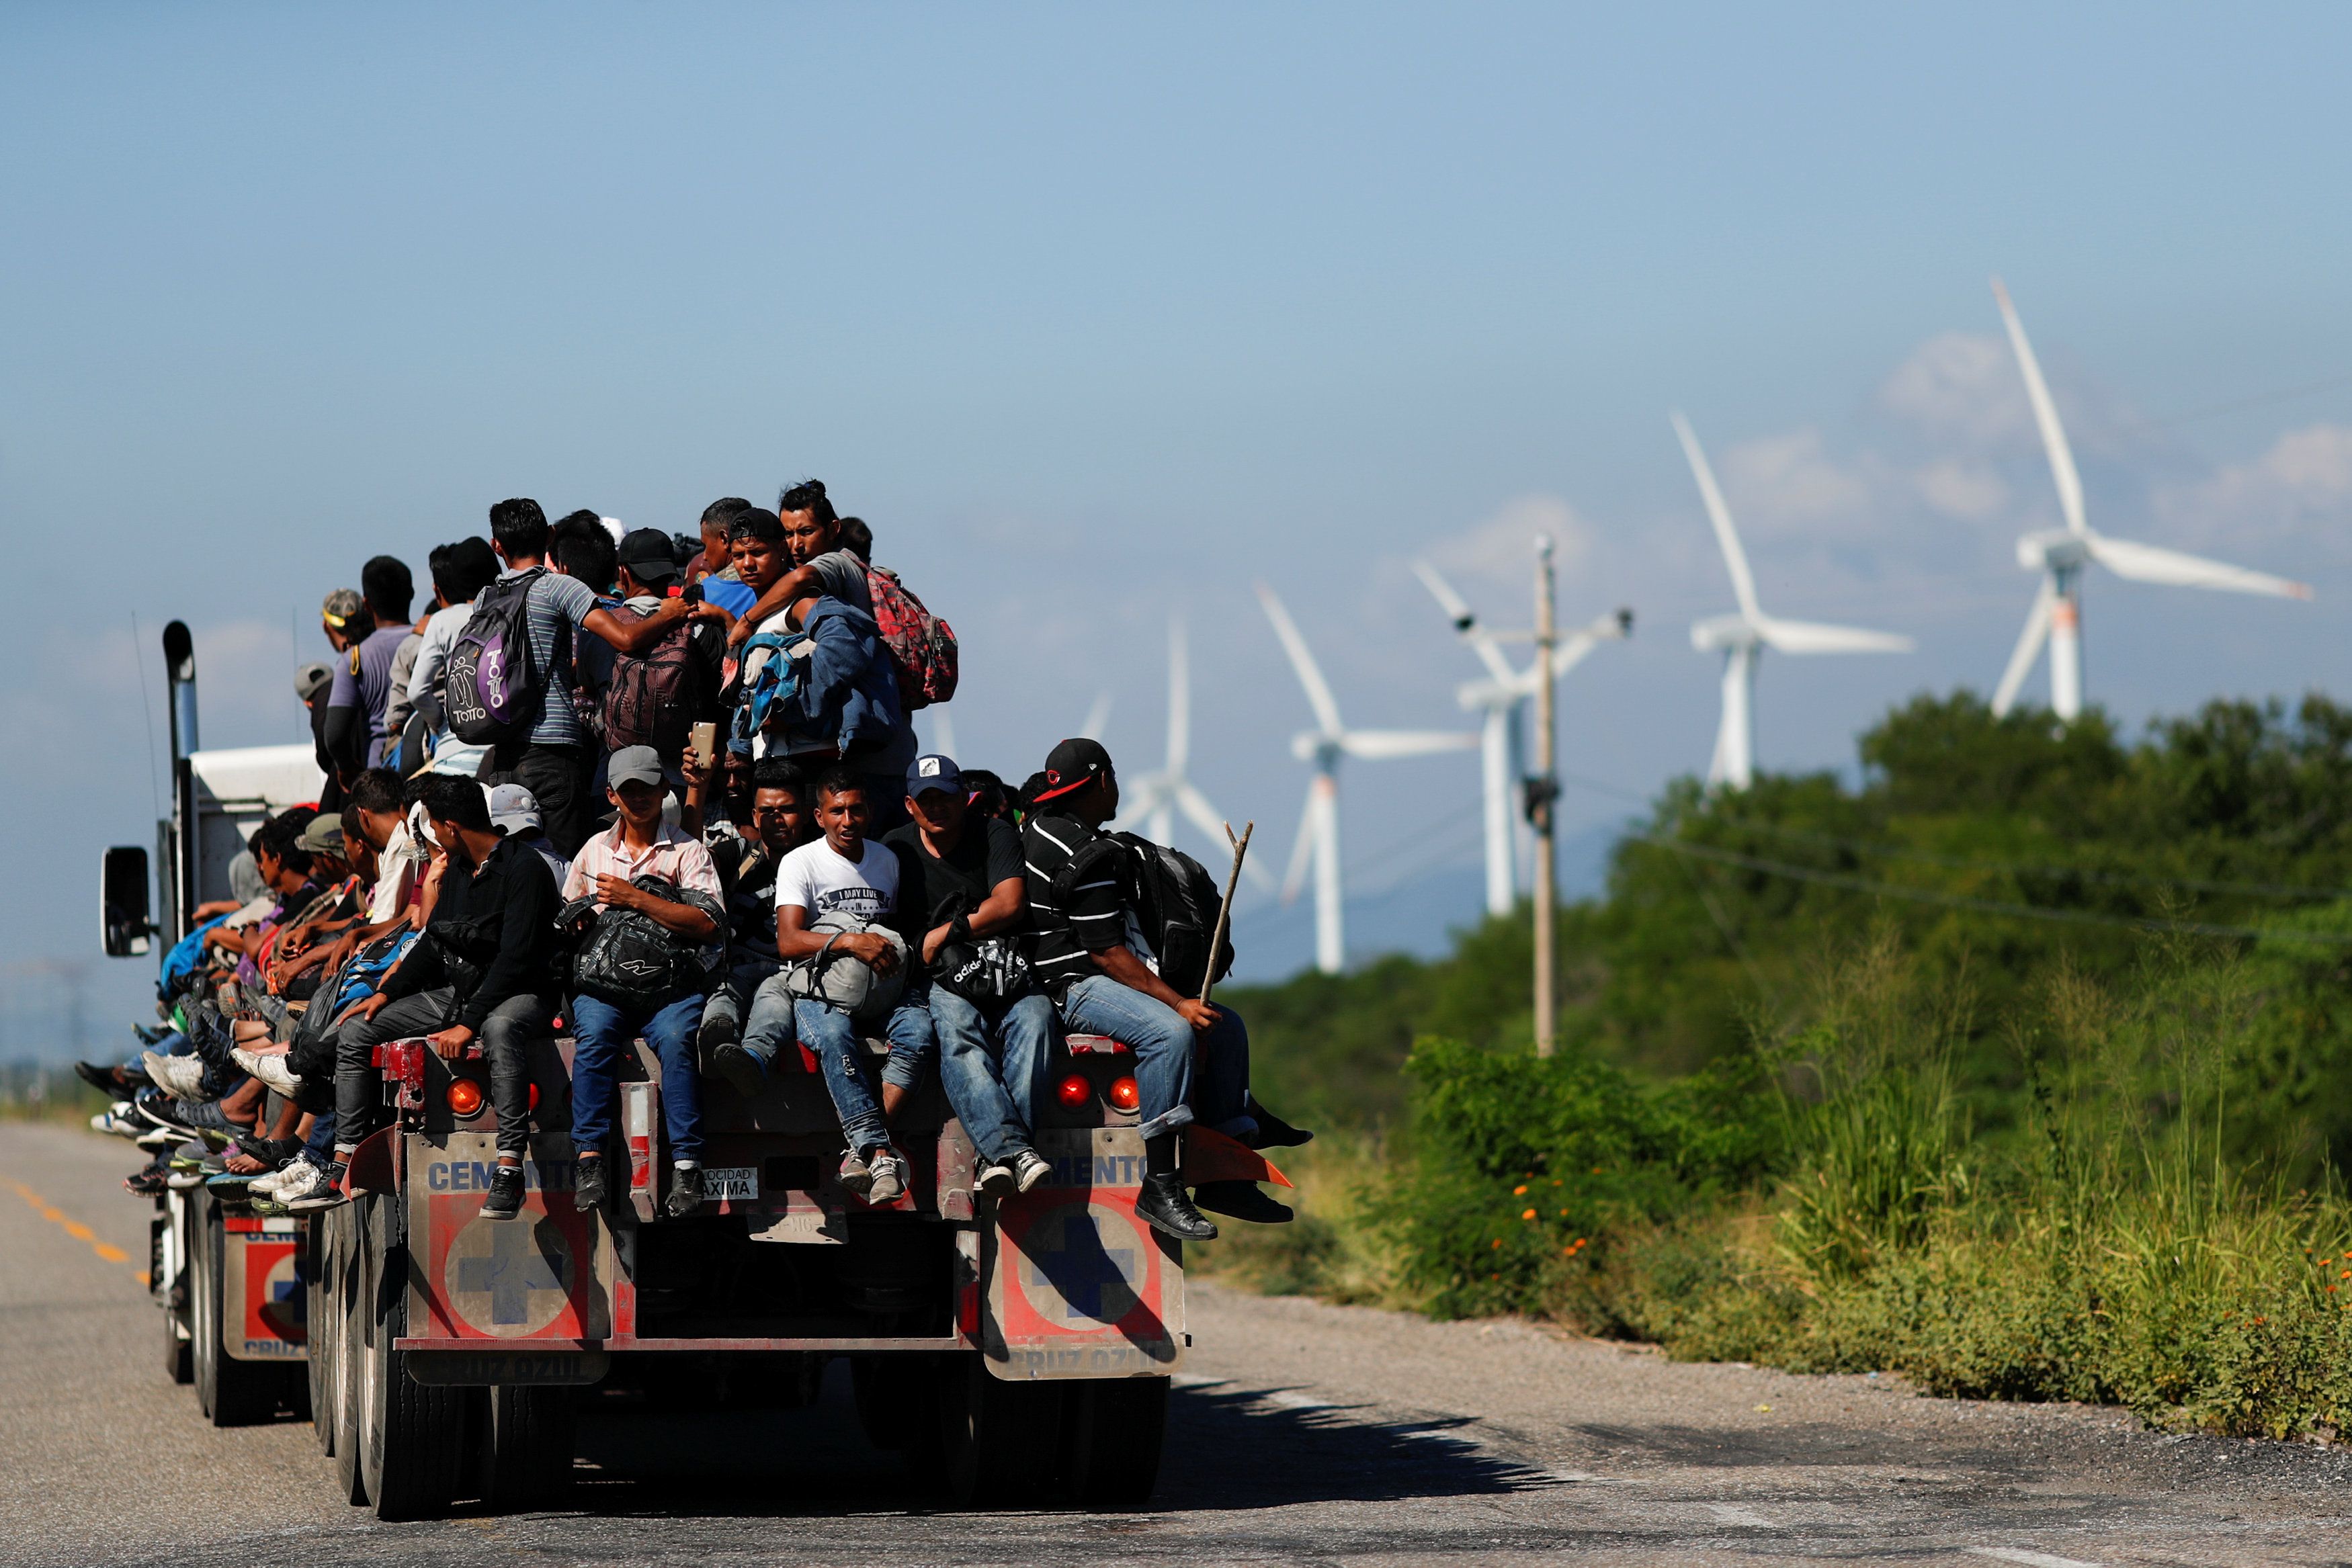 Esta medida surge en el marco de la caravana de migrantes que actualmente está en México y tiene como destino EE.UU..